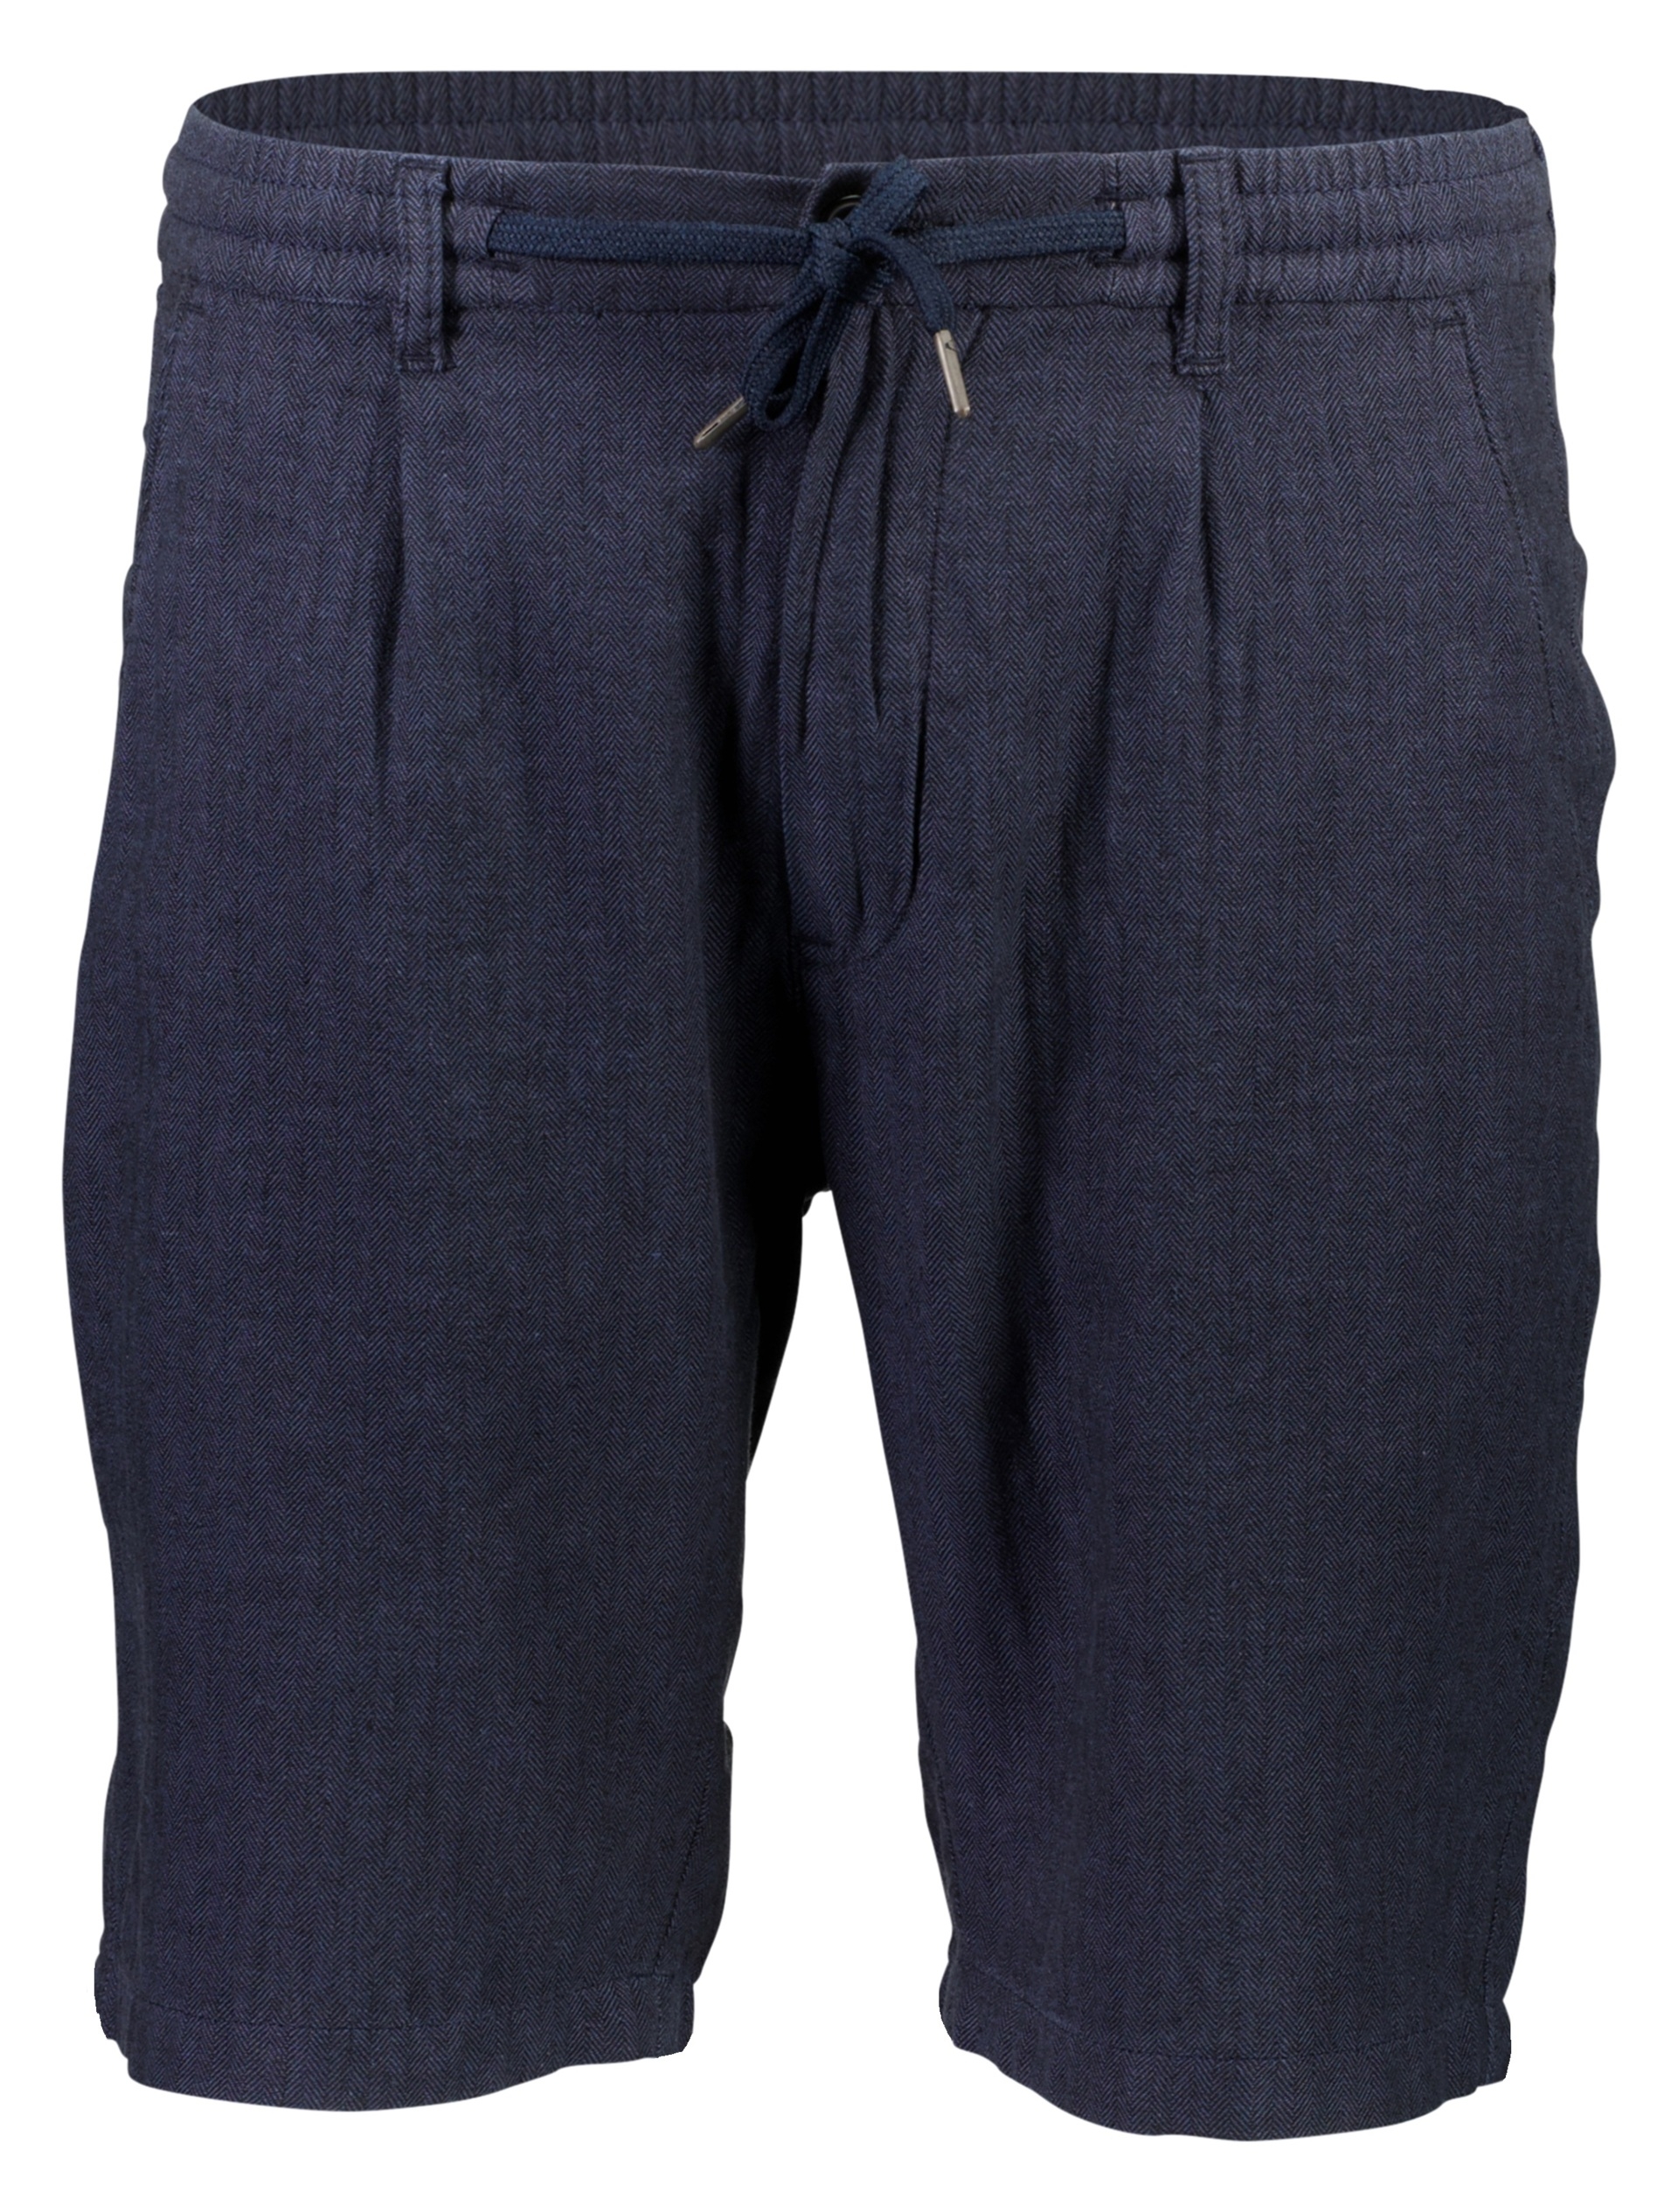 Junk de Luxe Linen shorts blue / navy